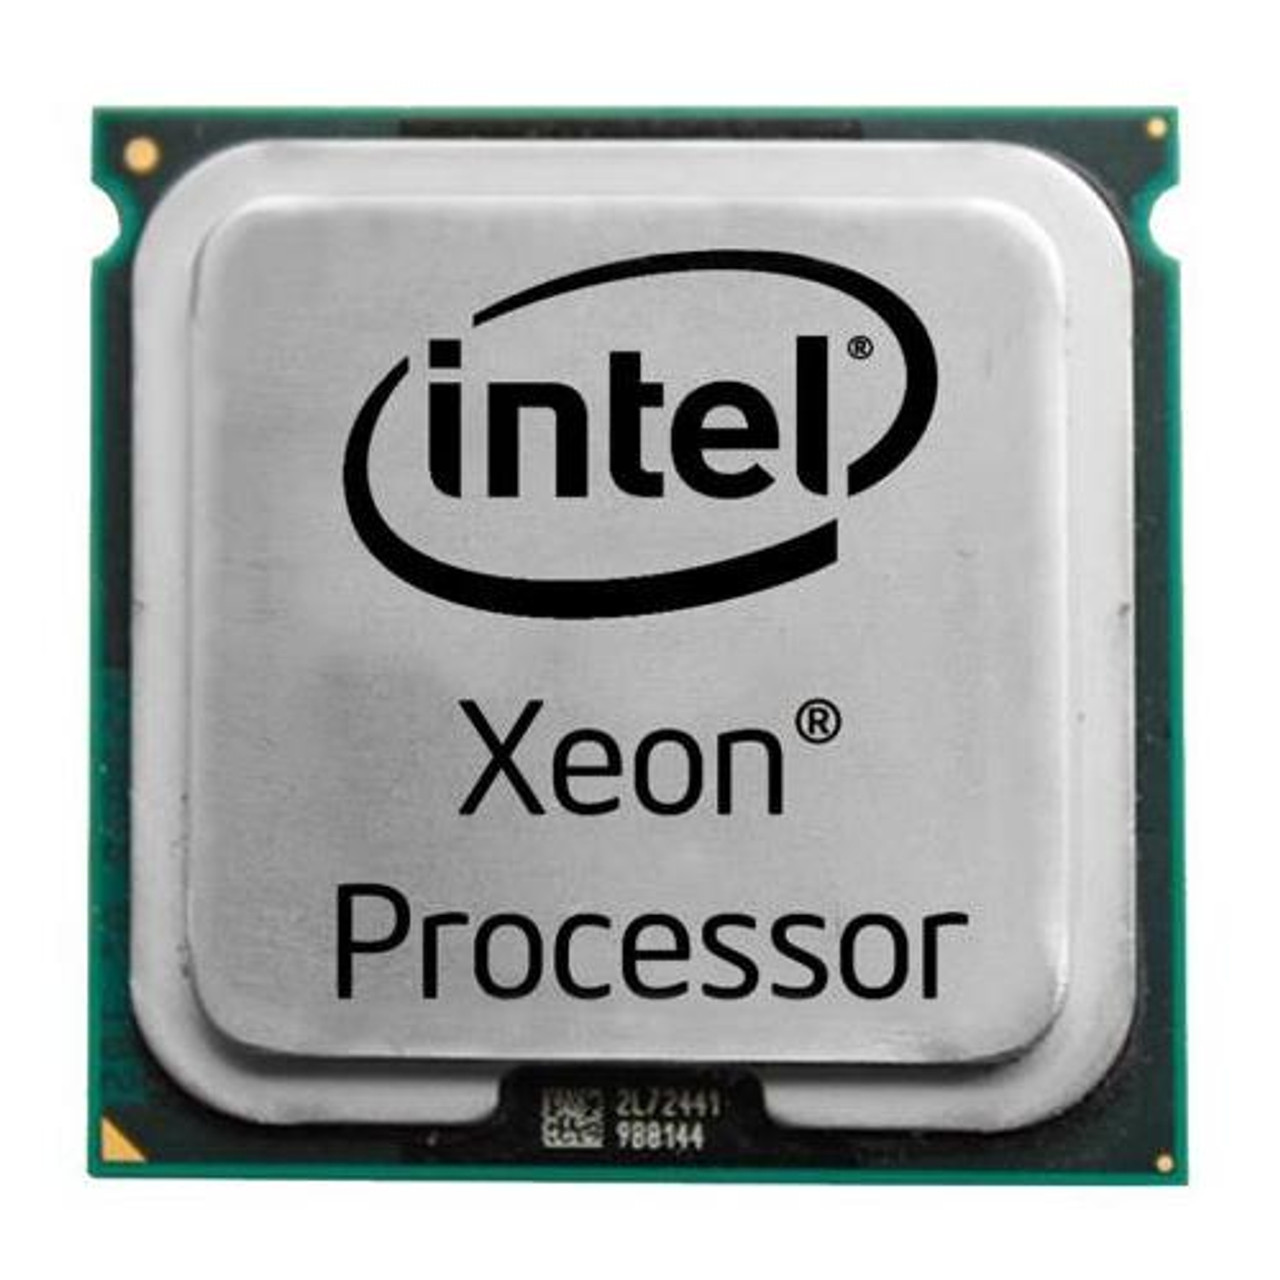 Процессор интел ксеон. Процессор Интел Xeon. Процессоры Intel Xeon 2.8 GHZ. Серверный процессор Intel Xeon. Intel ксеон серверный процессор.